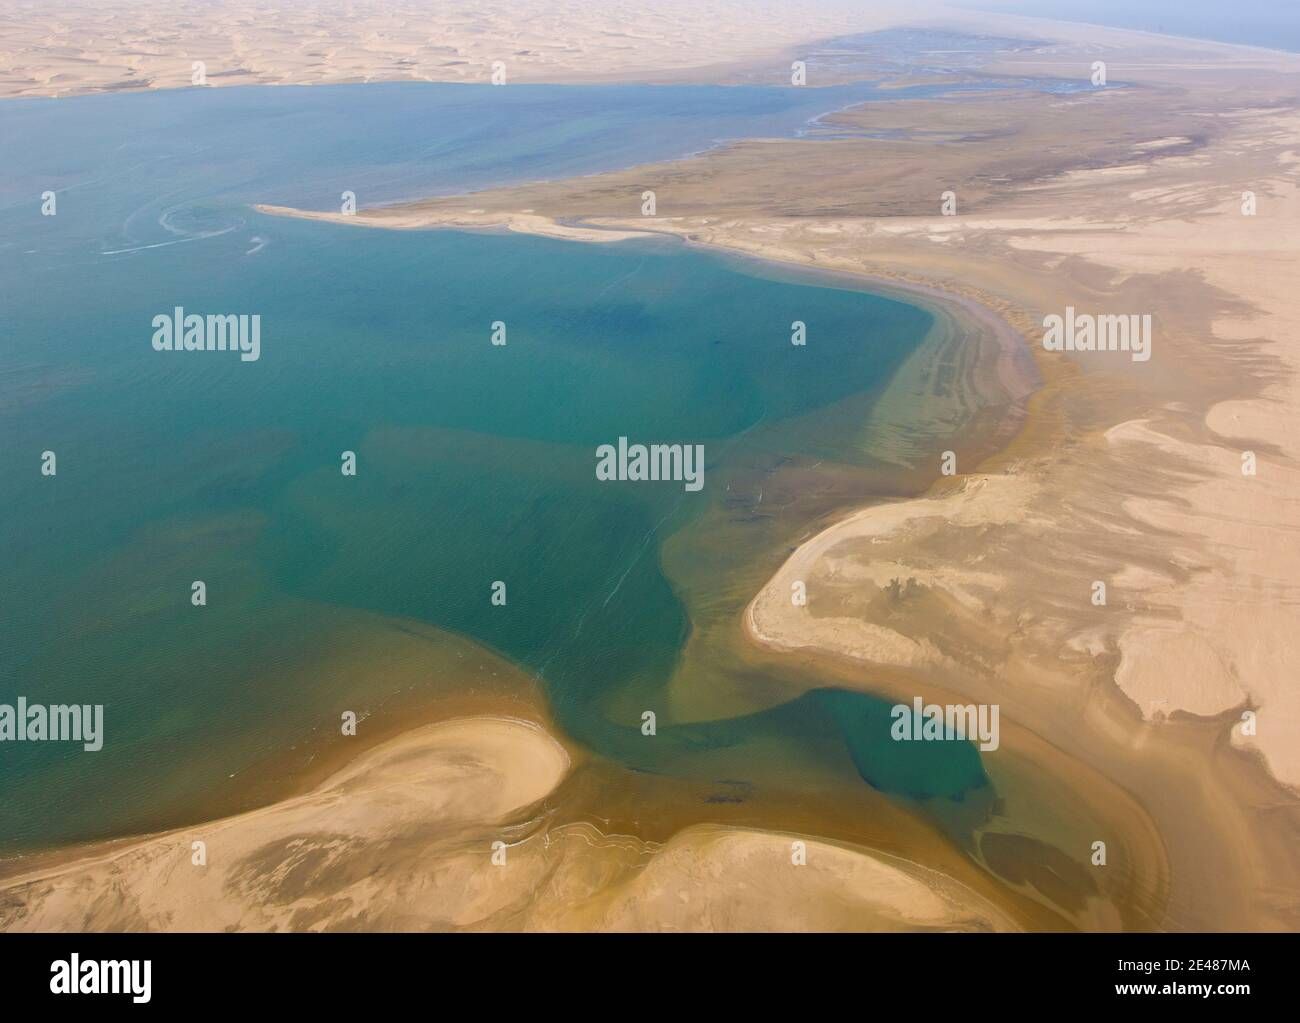 El desierto del Dahara se vuelve oceano tras la aparición de seguidores de sammy rivers en sus alrededores